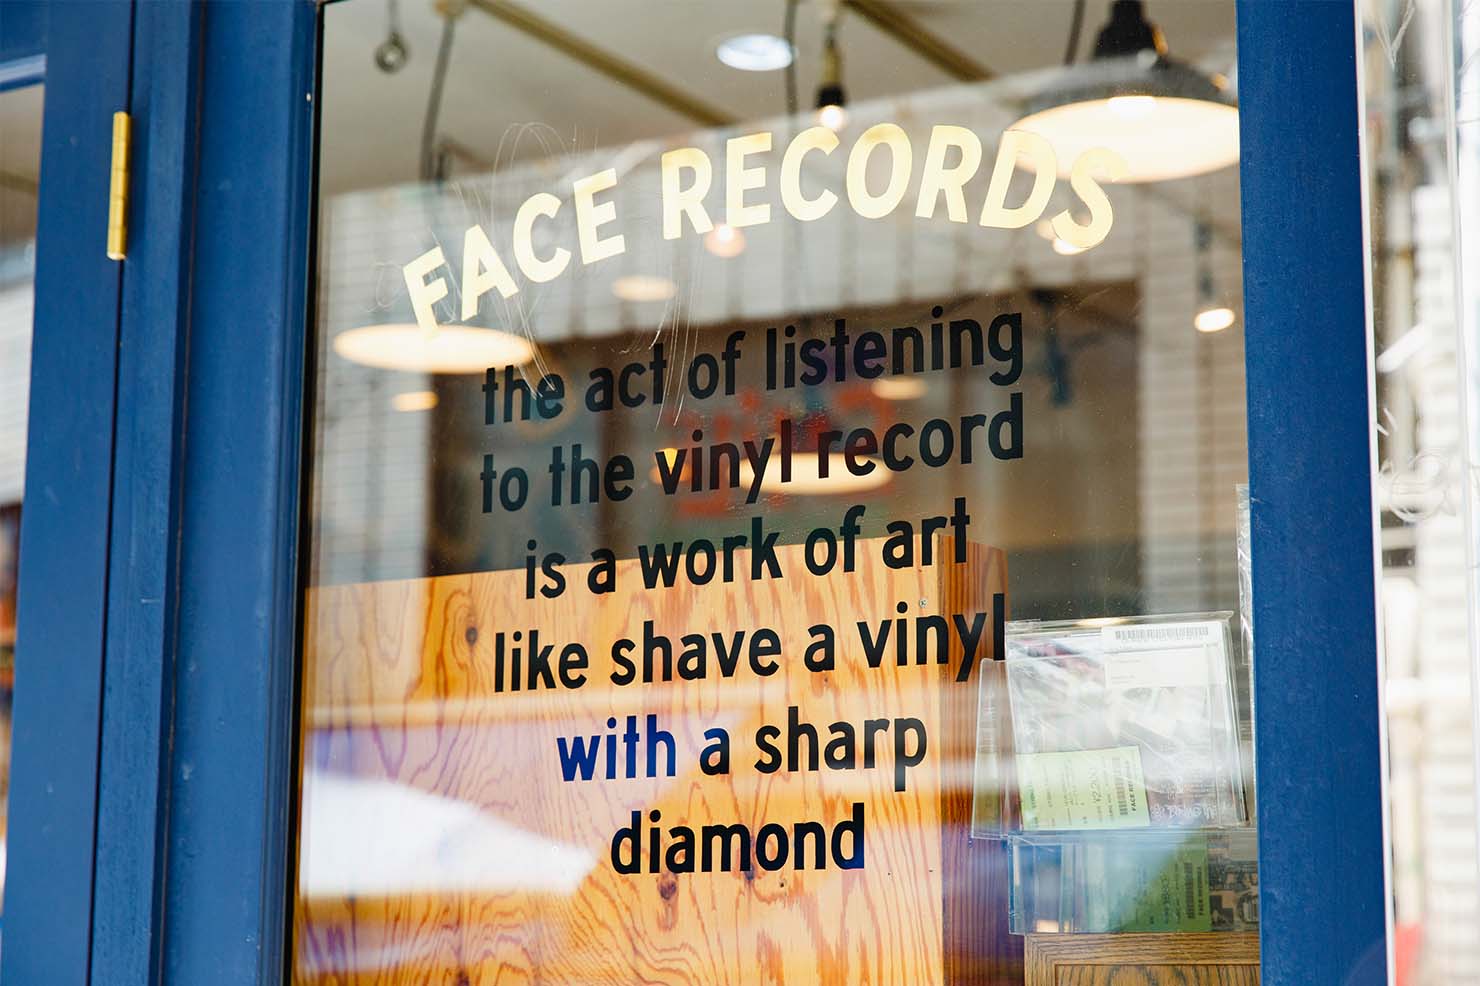 その頃は、CISCOとかManhattan Records、DMRみたいな大型店舗に対して、町のレコード屋さんみたいな小さなお店がどんどん増えだしたんですけど、Face Recordsはその先駆けだったと思います